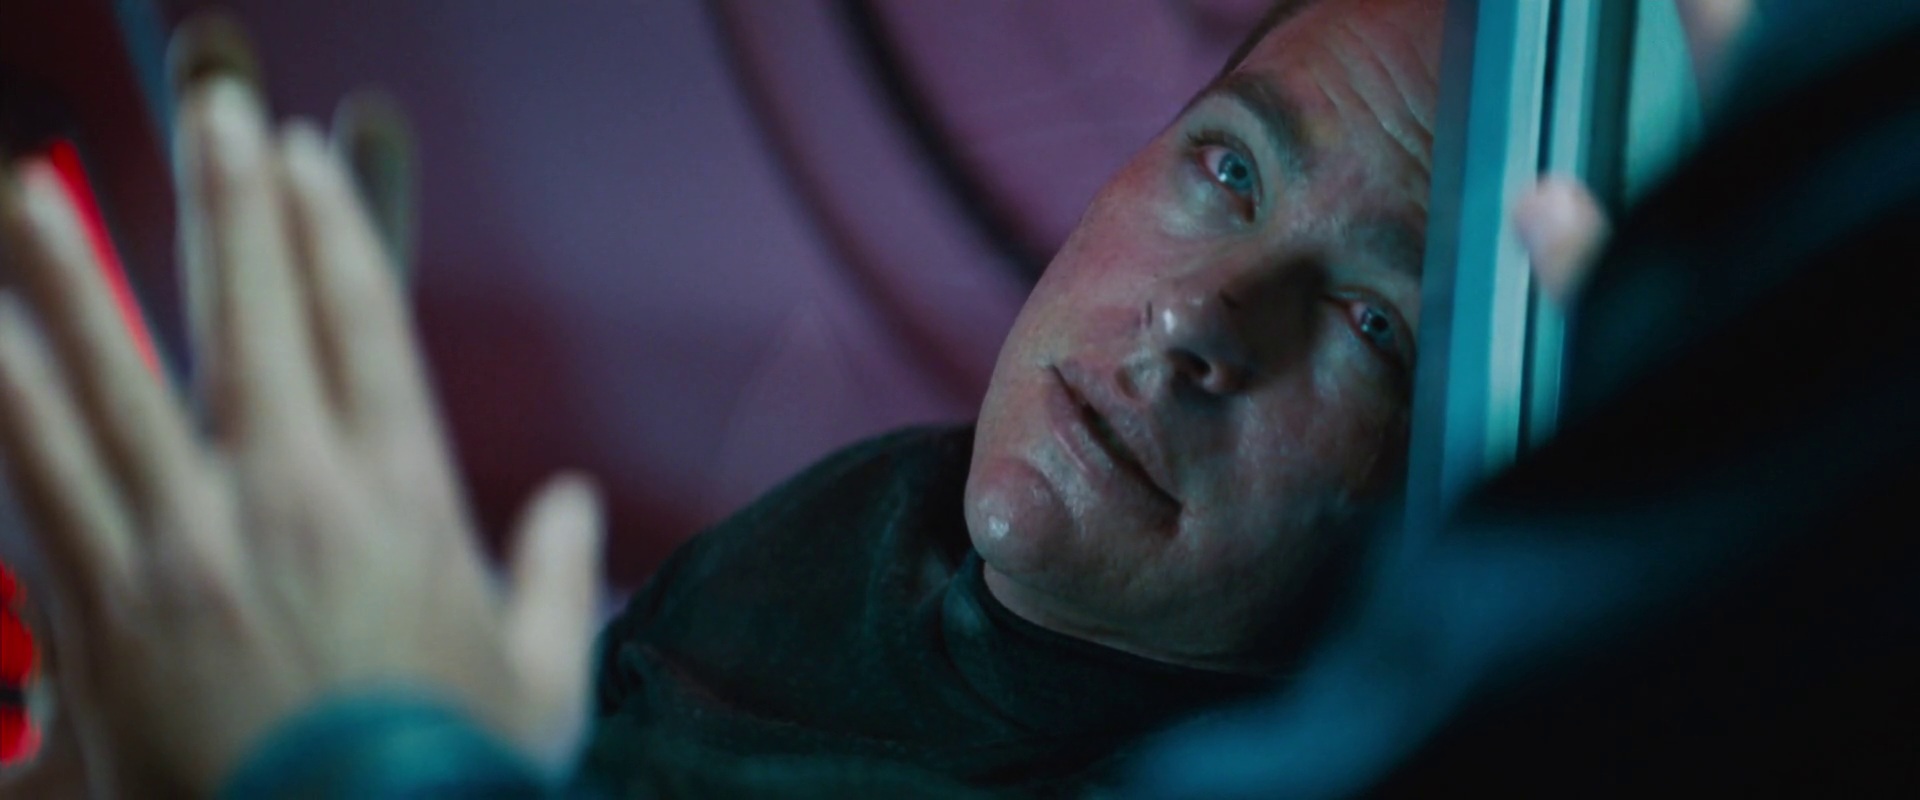 Kirk umírá na ozáření radiací, což sleduje Spock za průhlednými dveřmi.